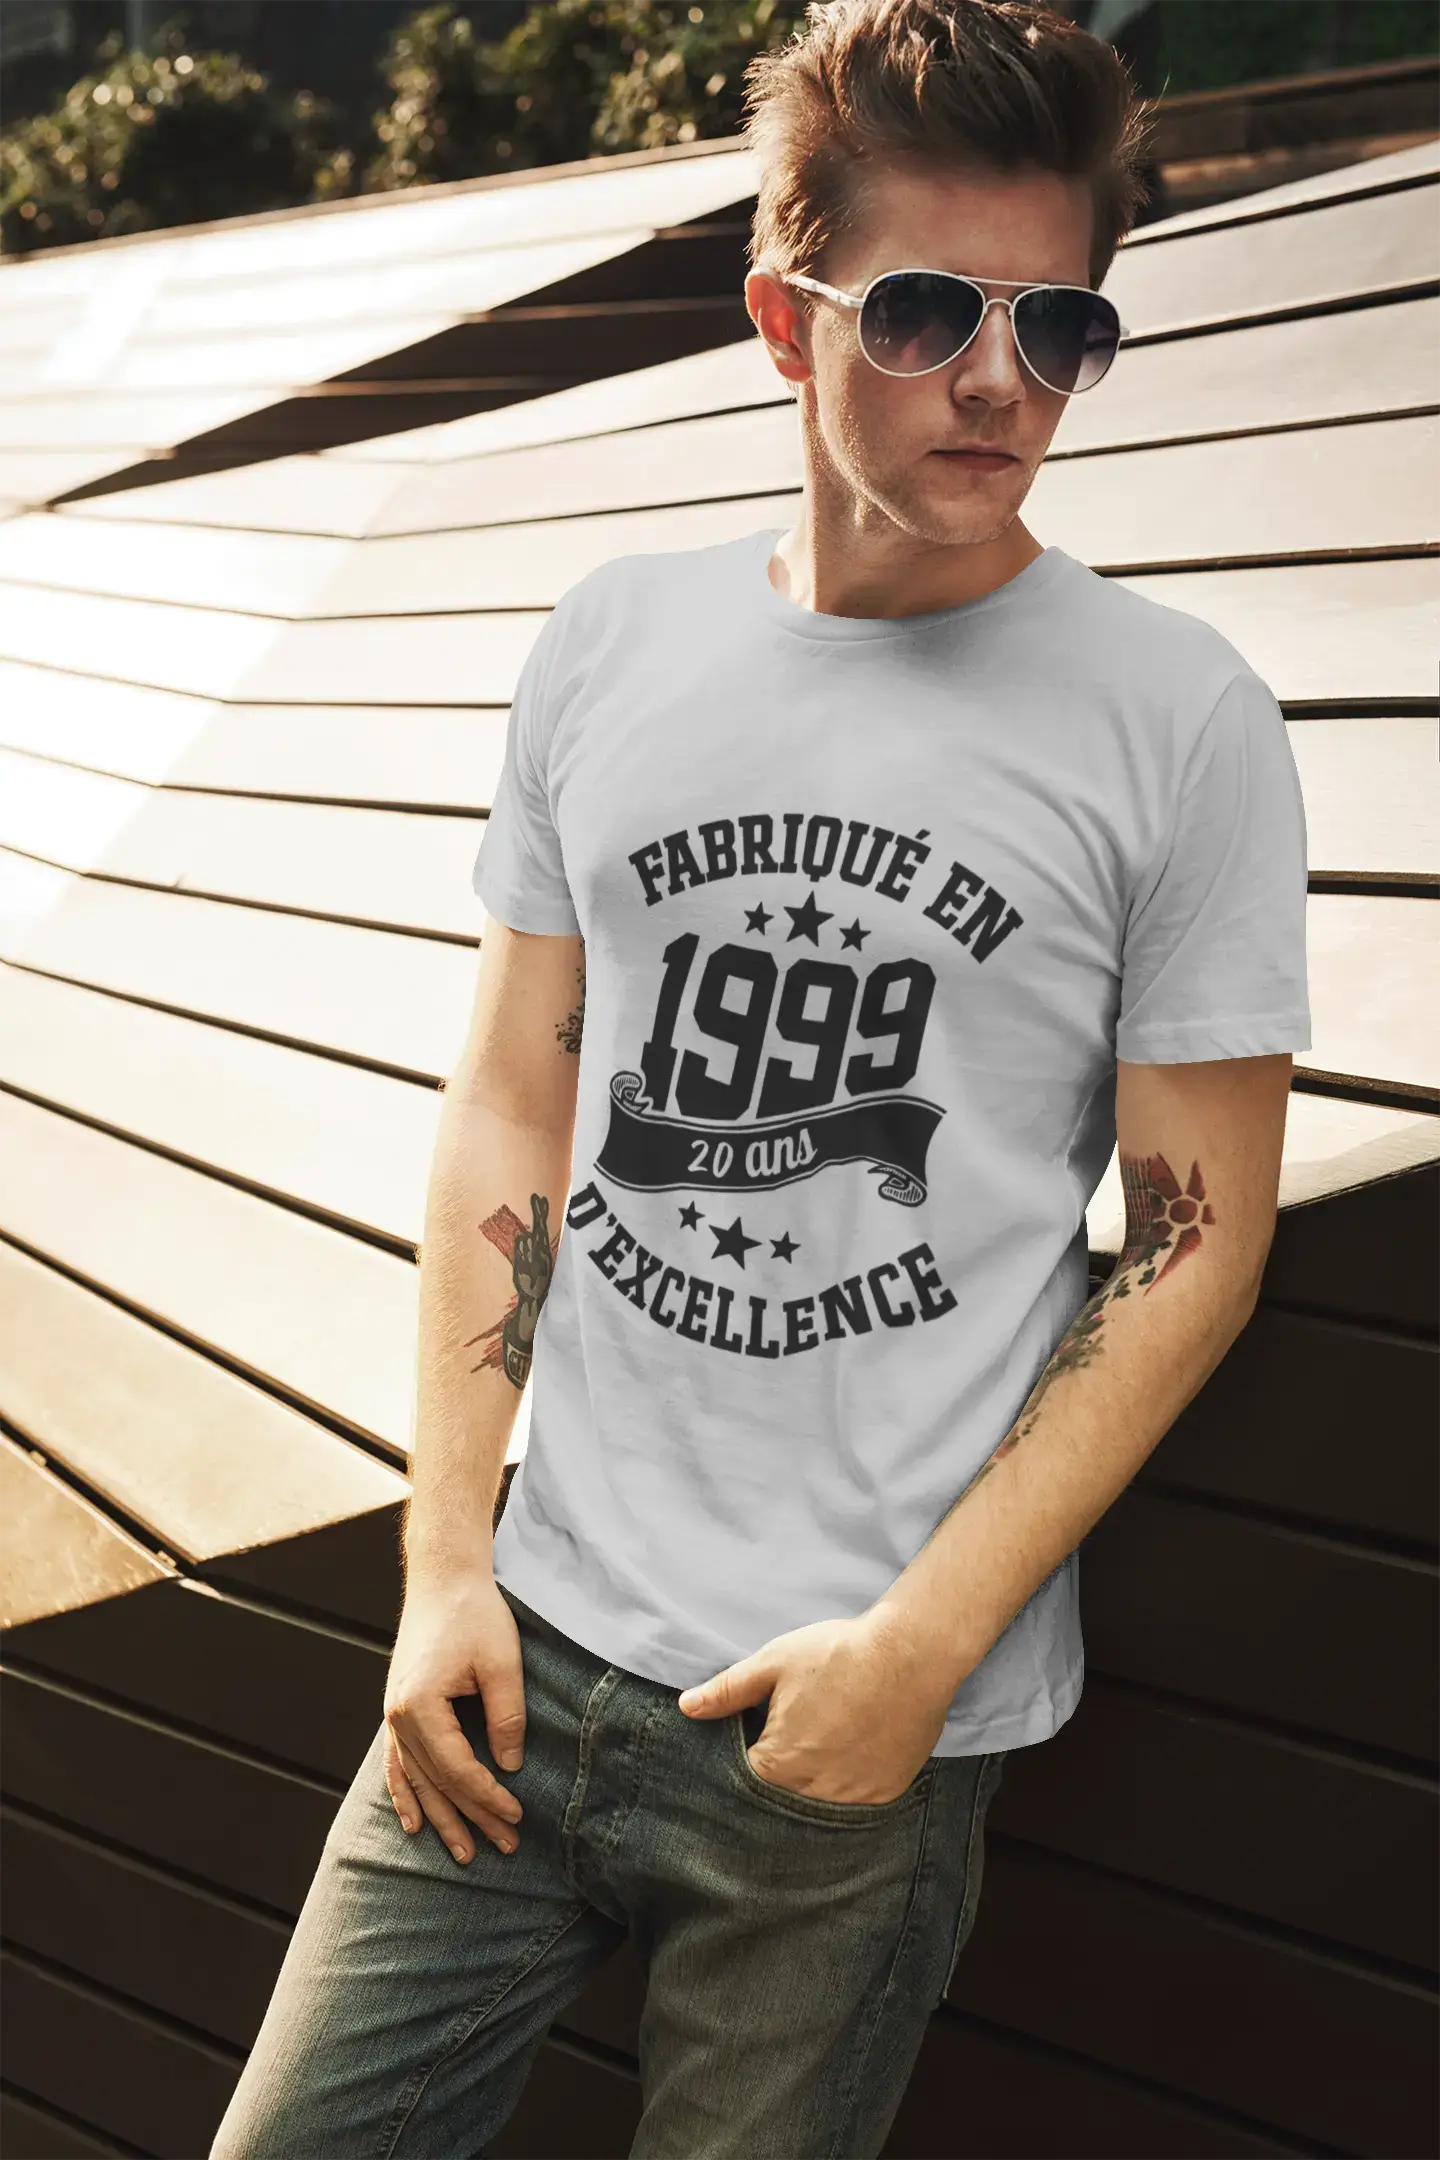 ULTRABASIC – Hergestellt im Jahr 1999, 20 Jahre alt. Original Unisex T-Shirt Black Profond